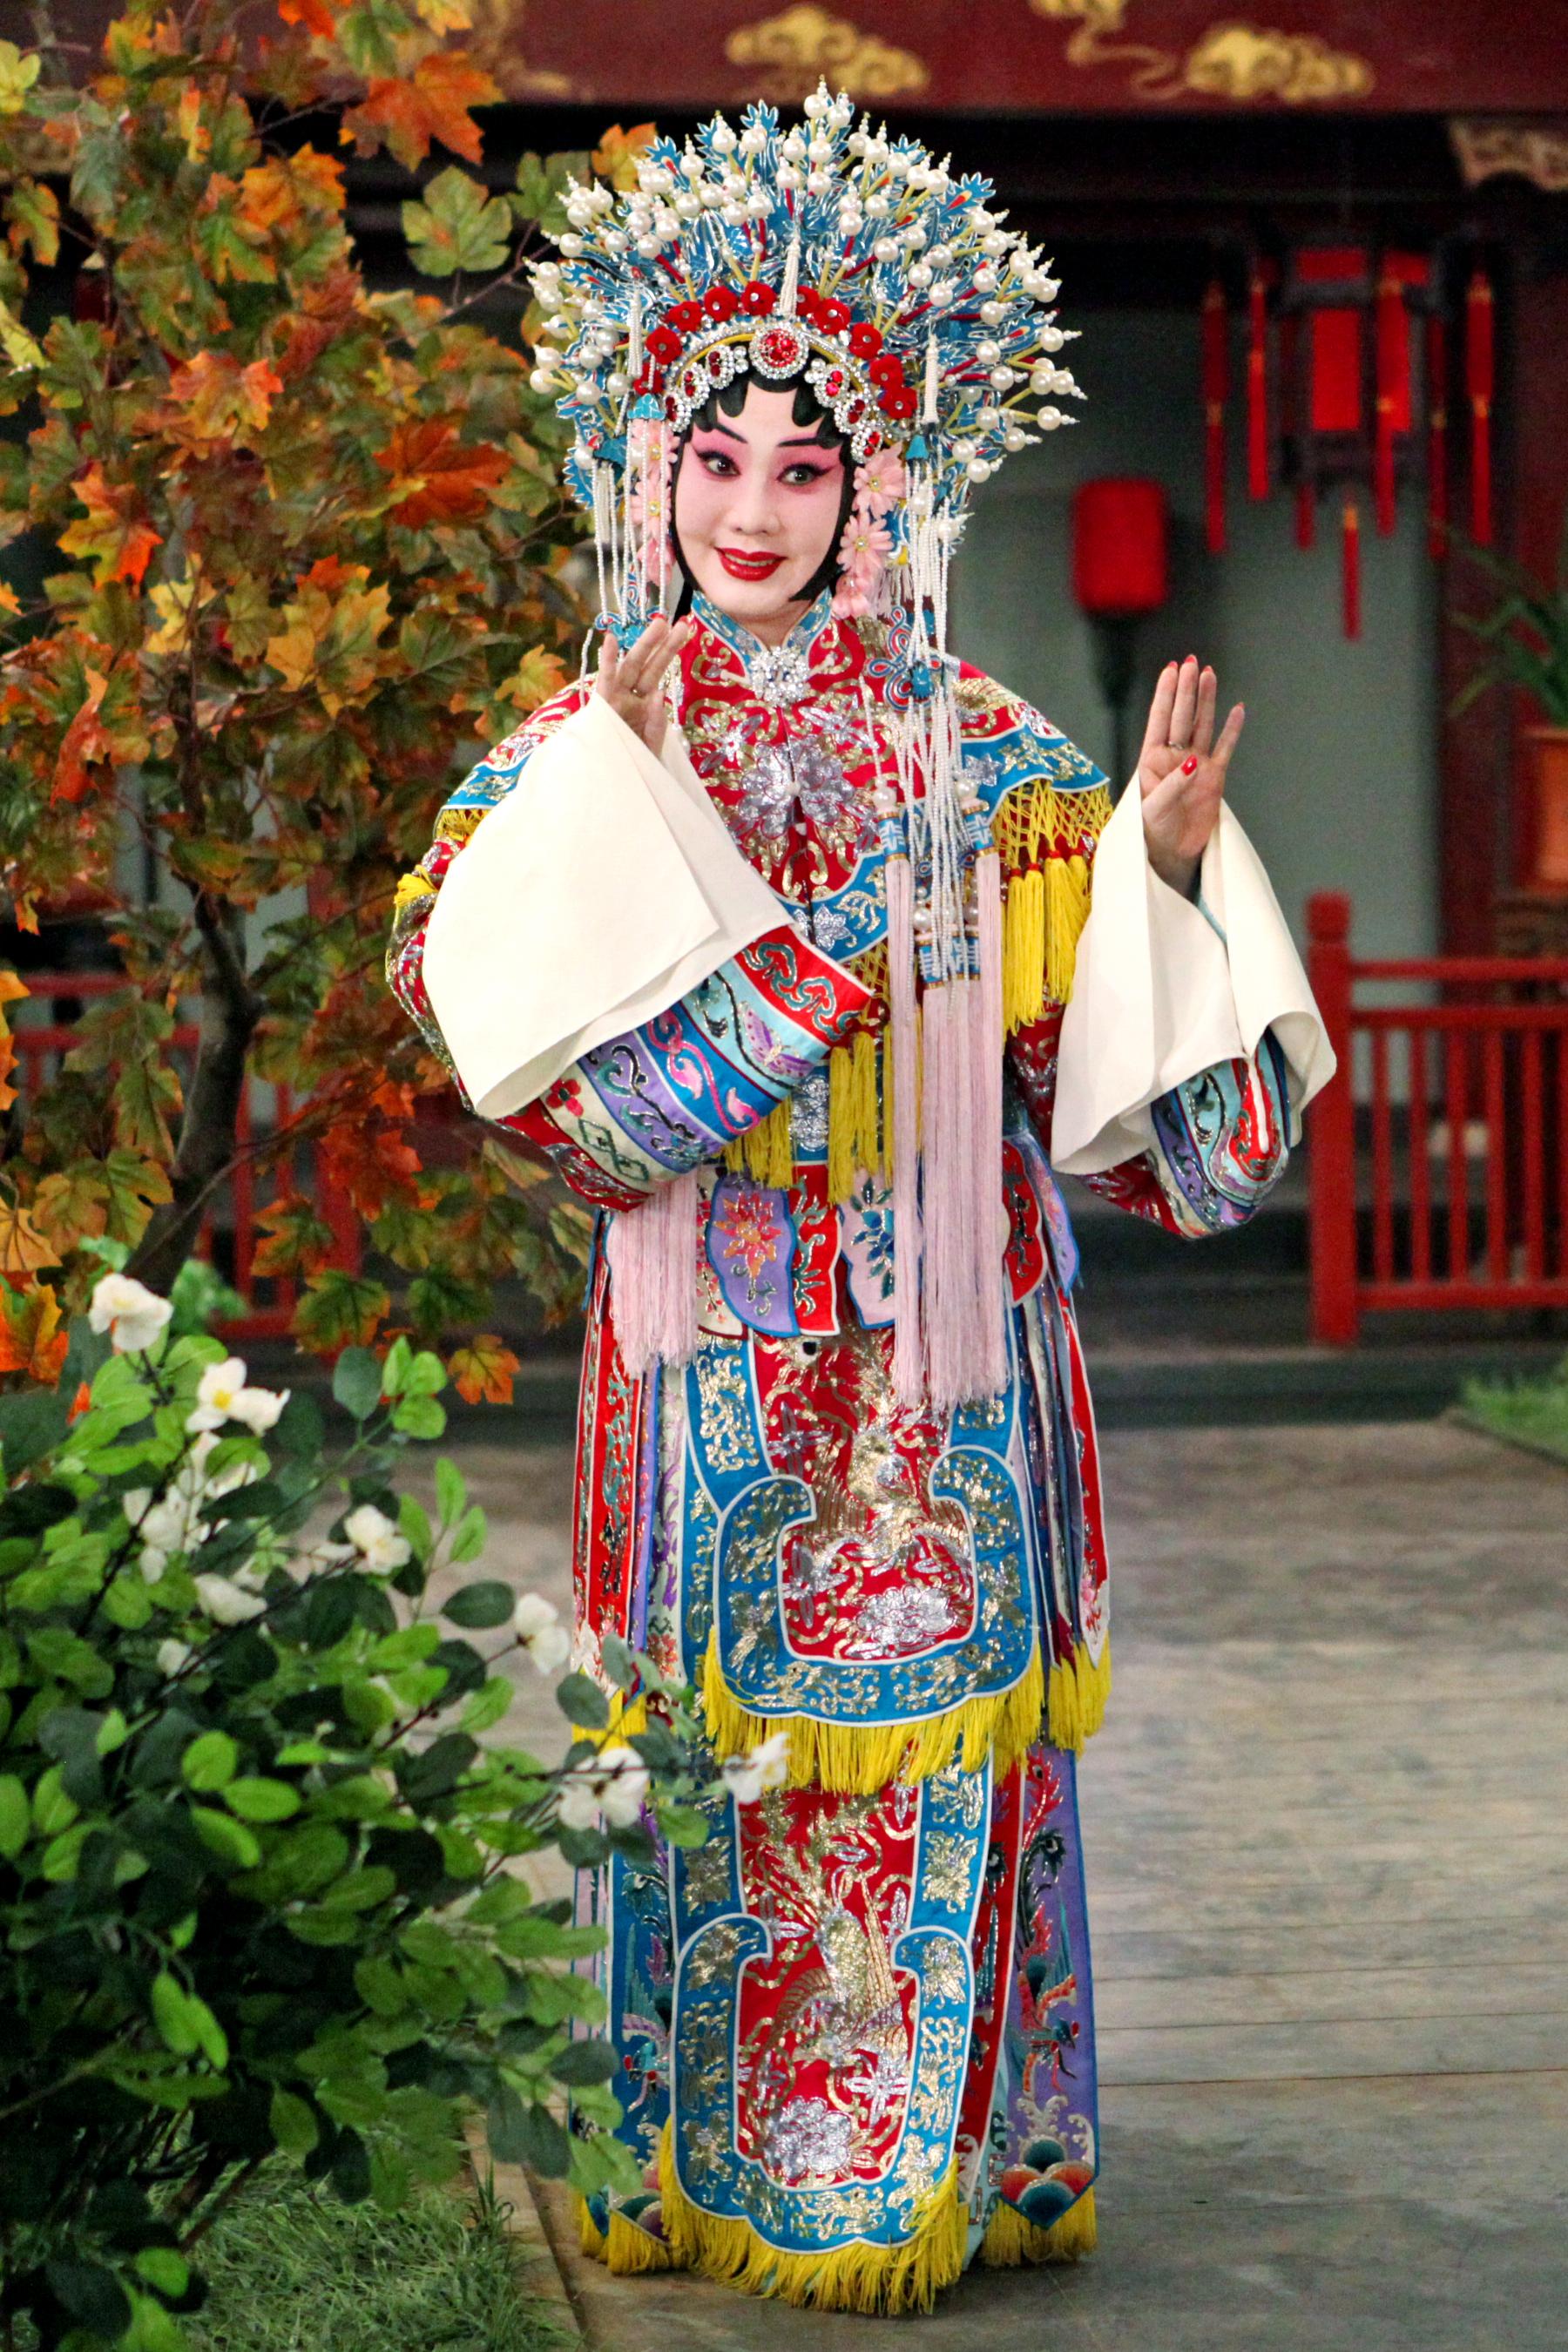 康樂及文化事務署邀得北京京劇院六月中旬來港，獻演三場京劇藝術大師張君秋的青衣流派經典劇目作為今年中國戲曲節的開幕節目。圖為《狀元媒》劇照。